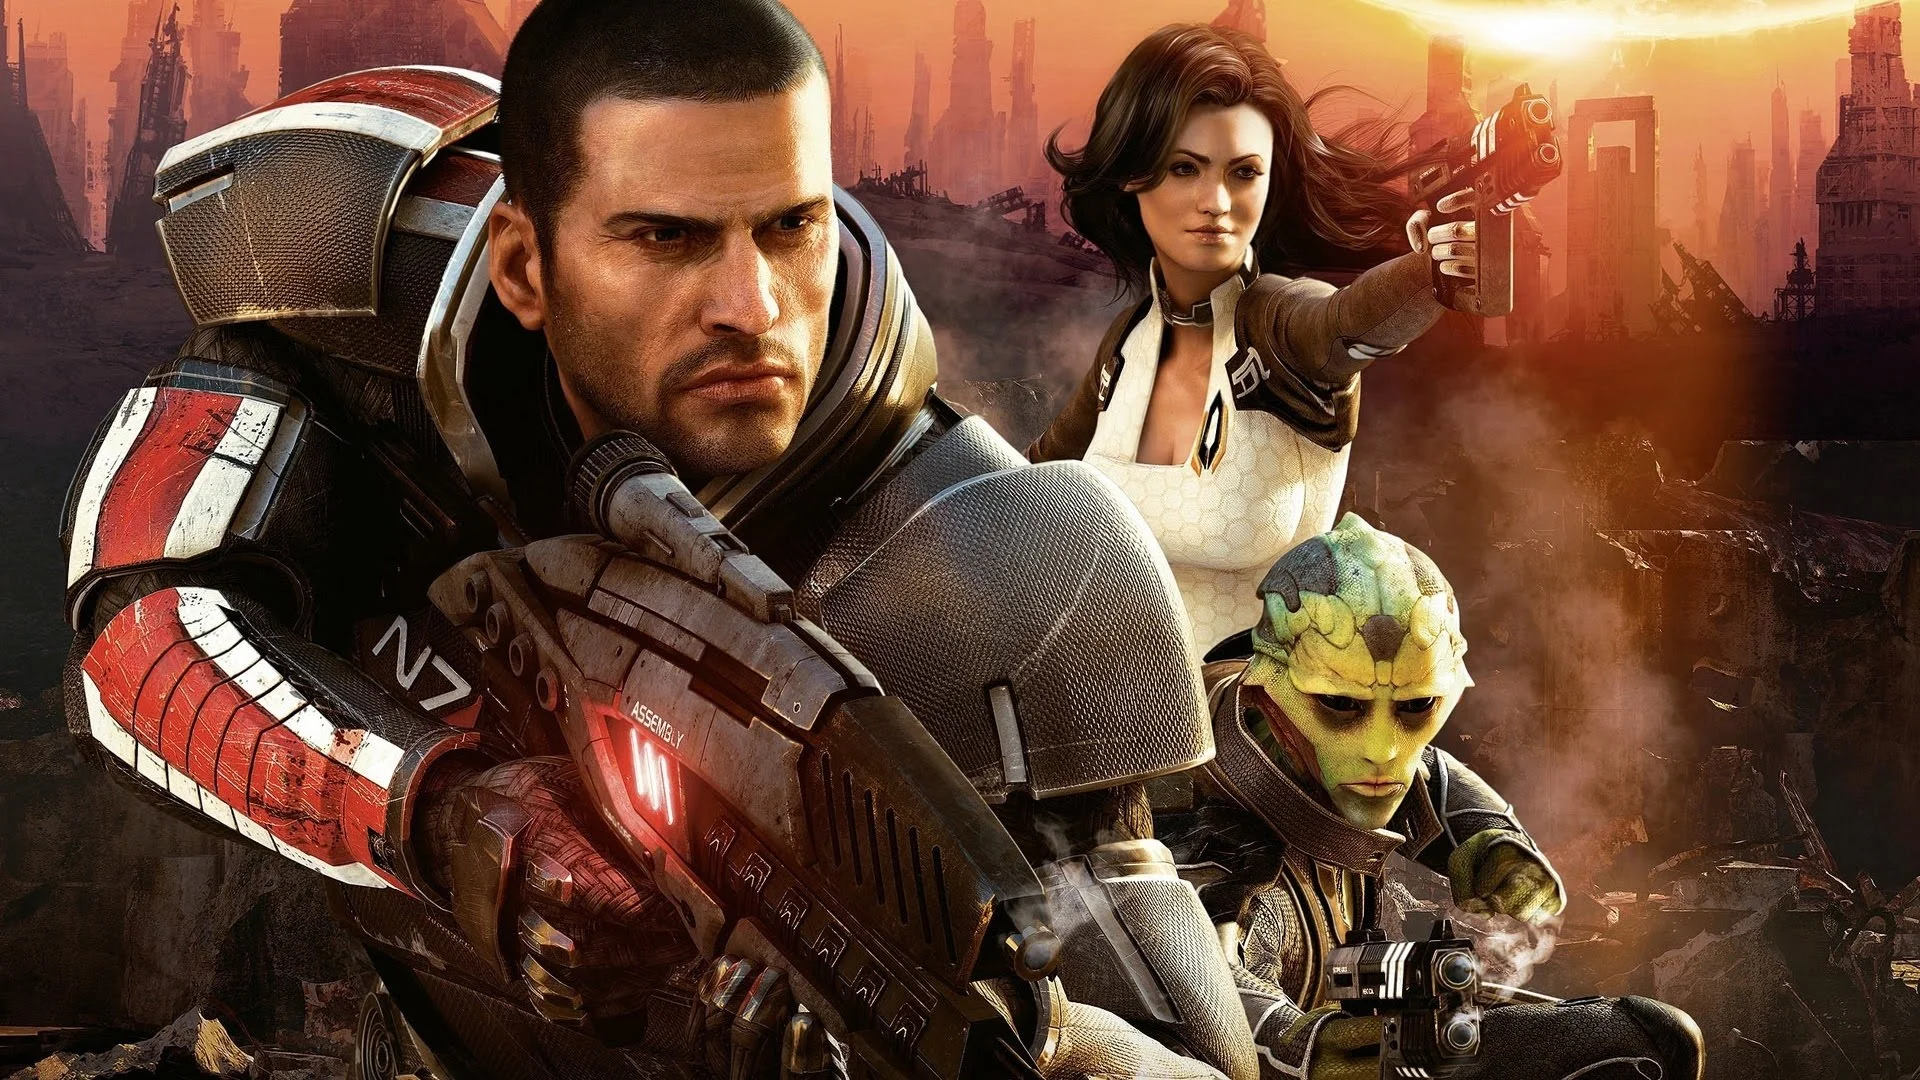 До релиза Mass Effect: Legendary Edition, куда войдут ремастеры трех первых частей серии, осталось совсем немного. И по этому случаю мы решили составить еще один тест на знание серии, в этот раз — только по второй части. Проверьте, насколько хорошо ты знаешь Mass Effect 2!